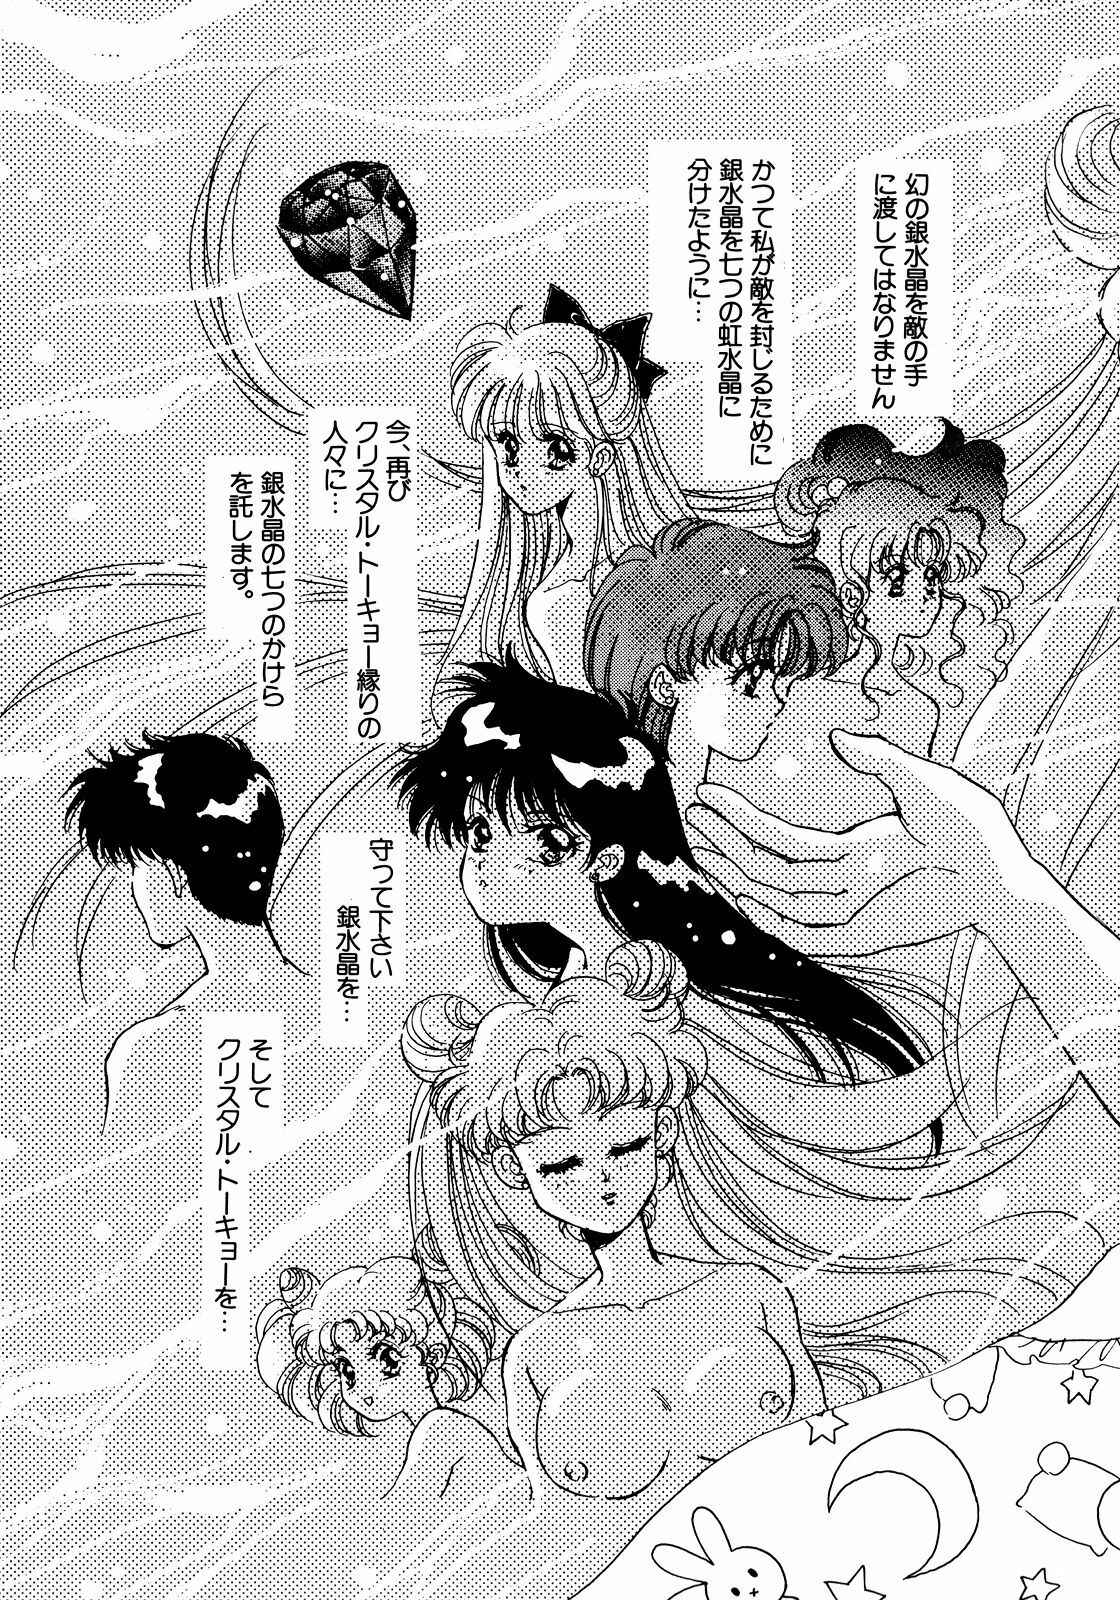 [Anthology] Lunatic Party 5 (Bishoujo Senshi Sailor Moon) page 6 full